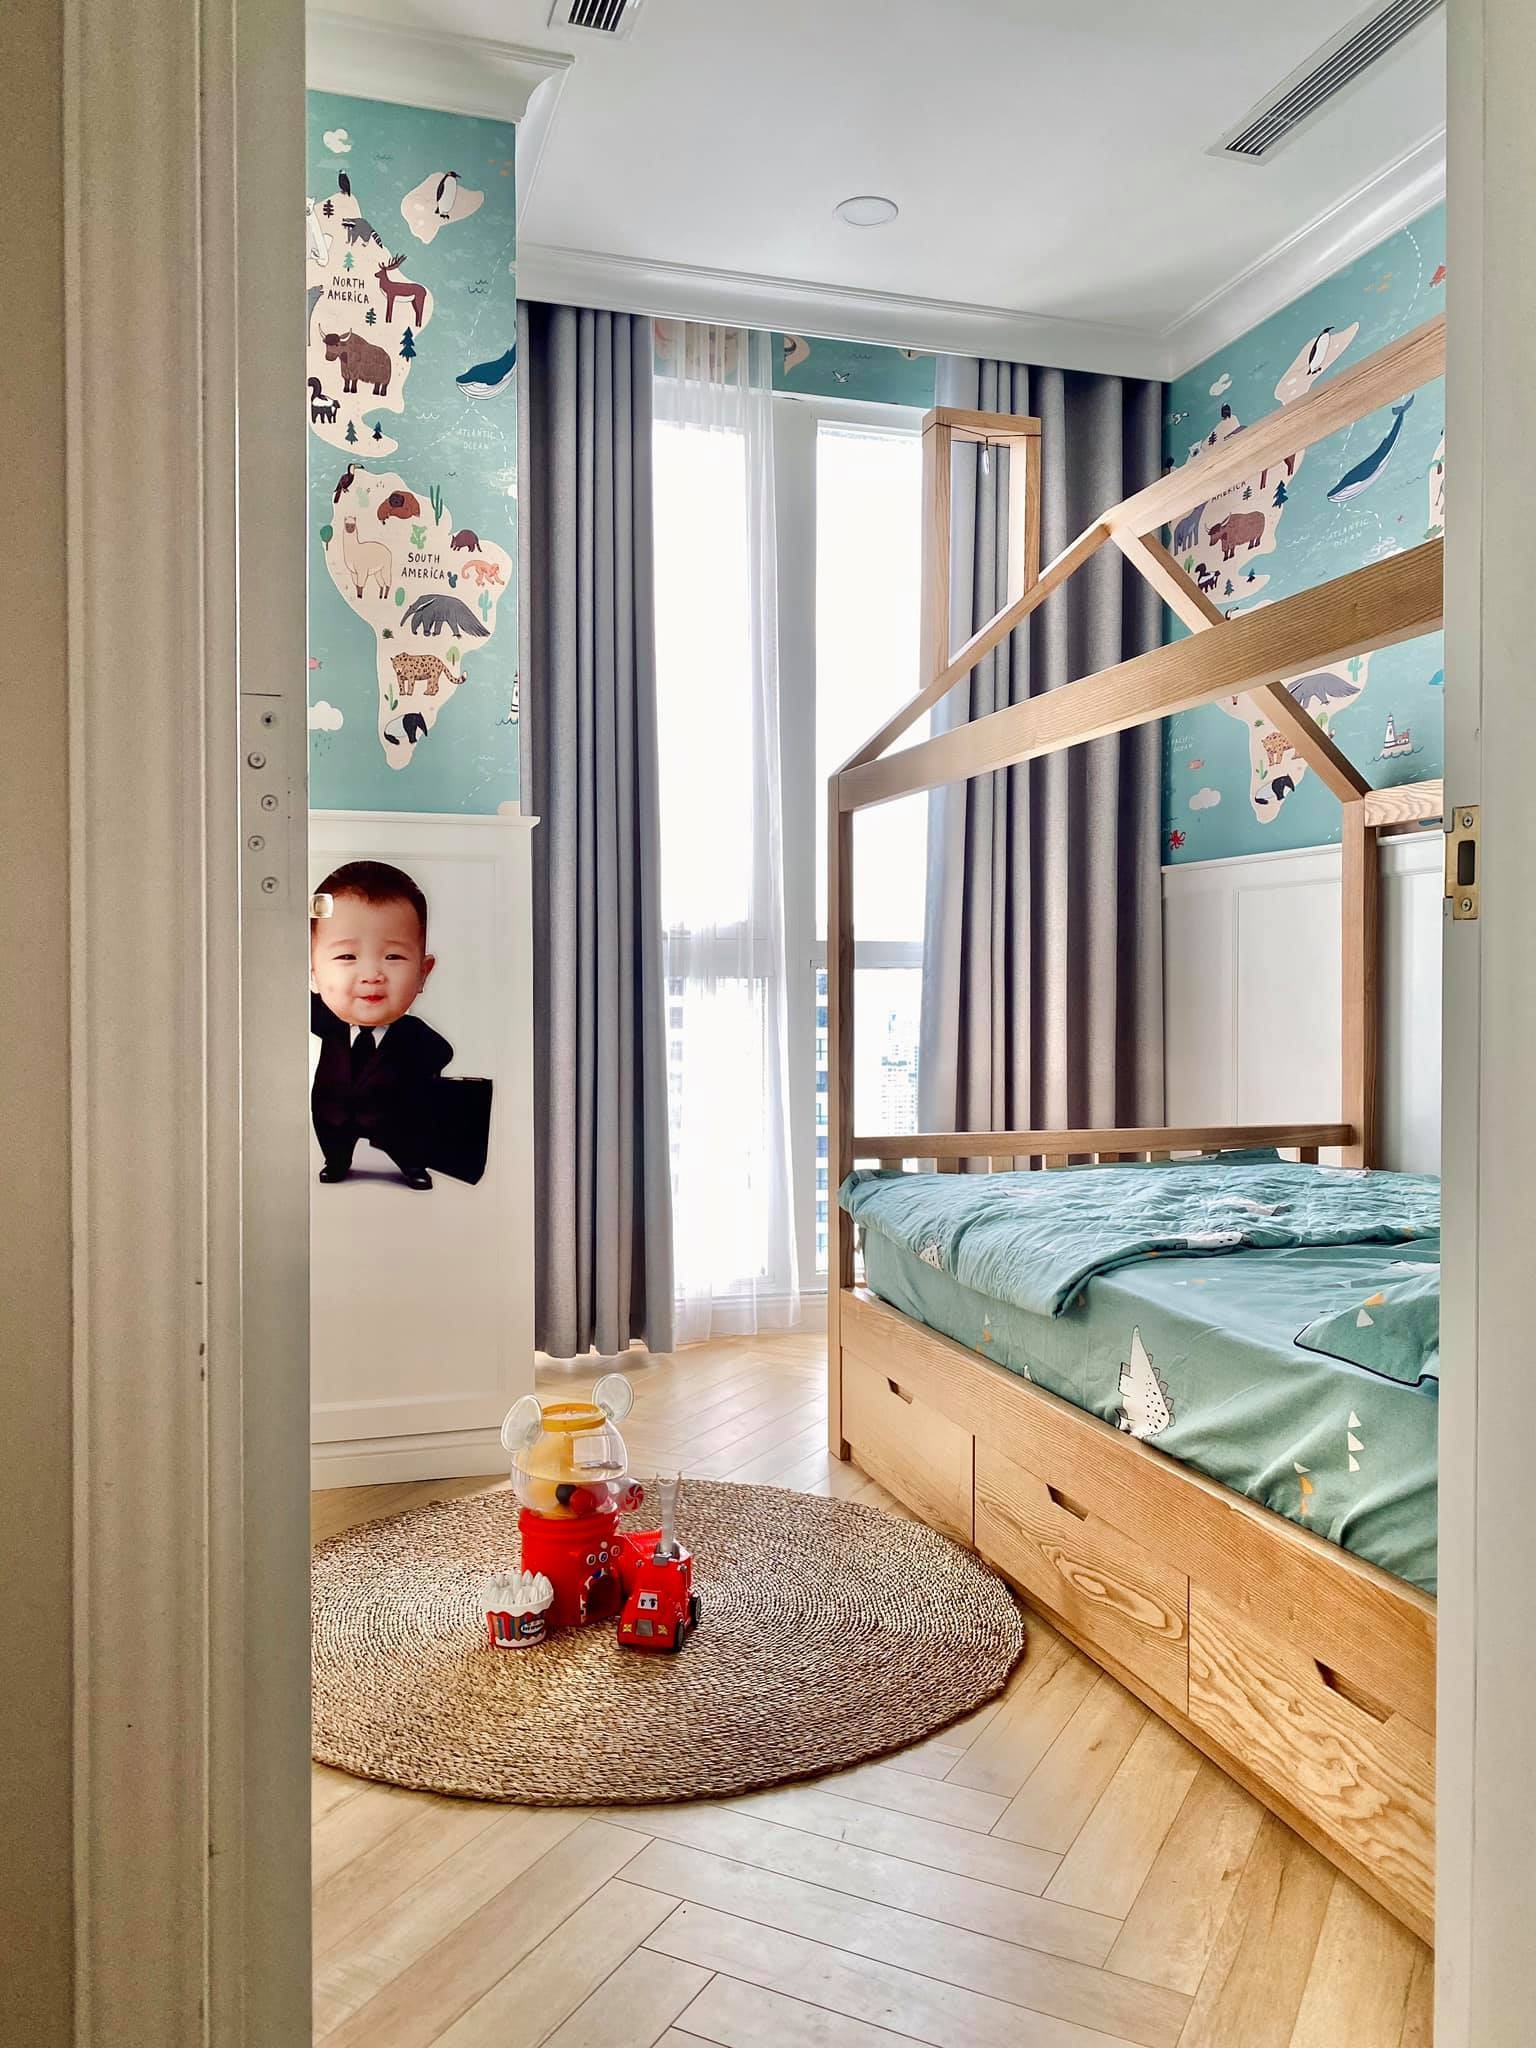 
Phòng ngủ dành cho con trai nhỏ
